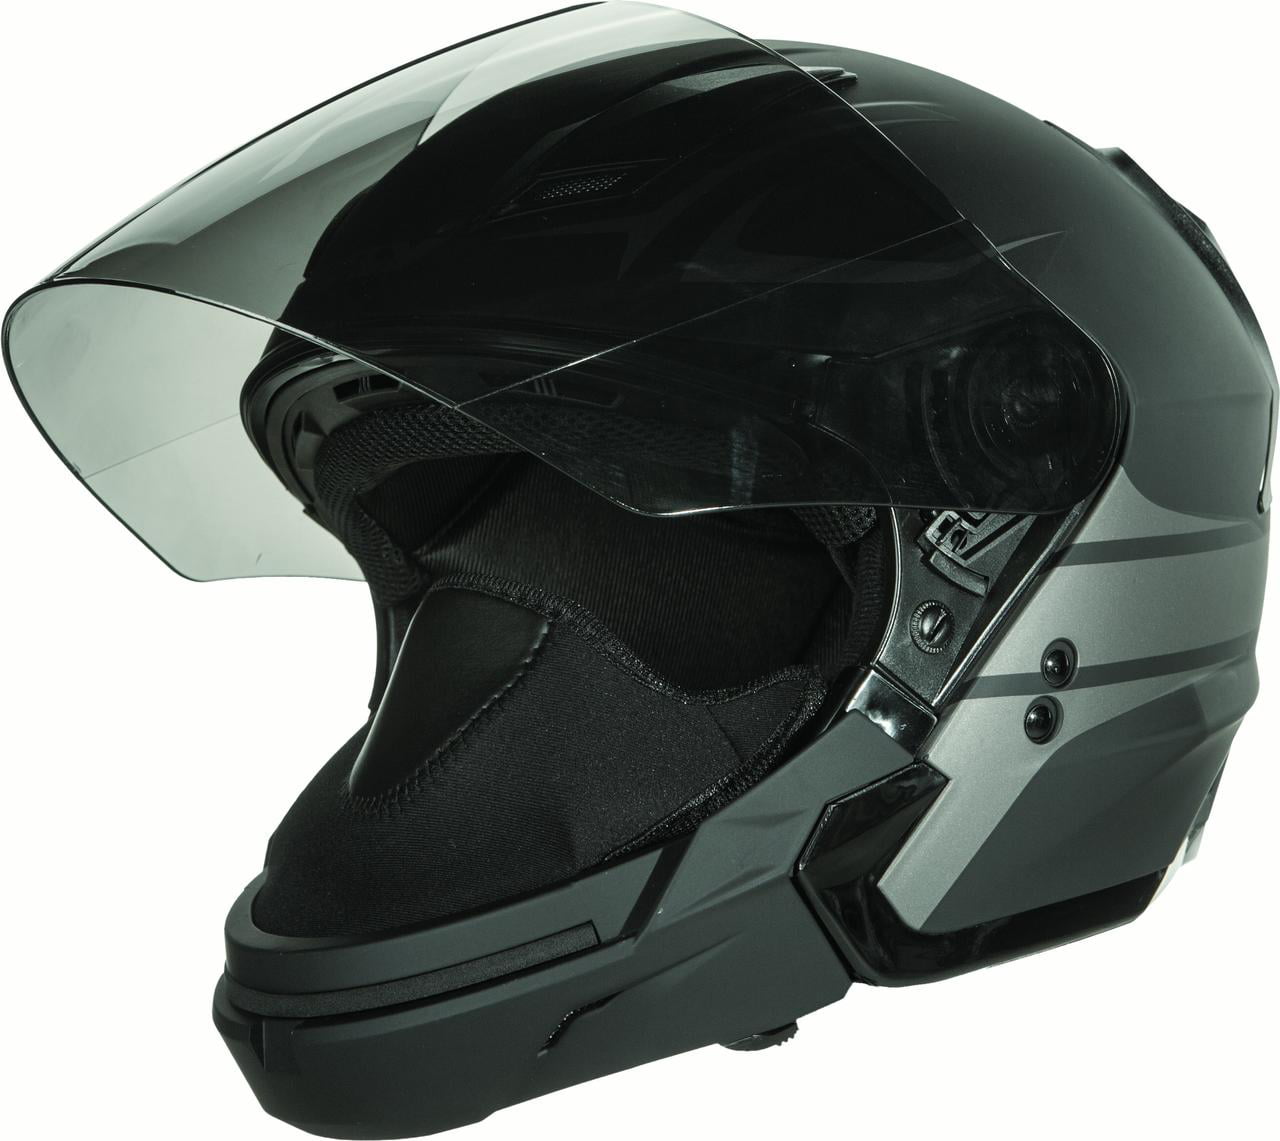 FLY Tourist Open Convertible Helmet Matte Black Silver 73-8107 